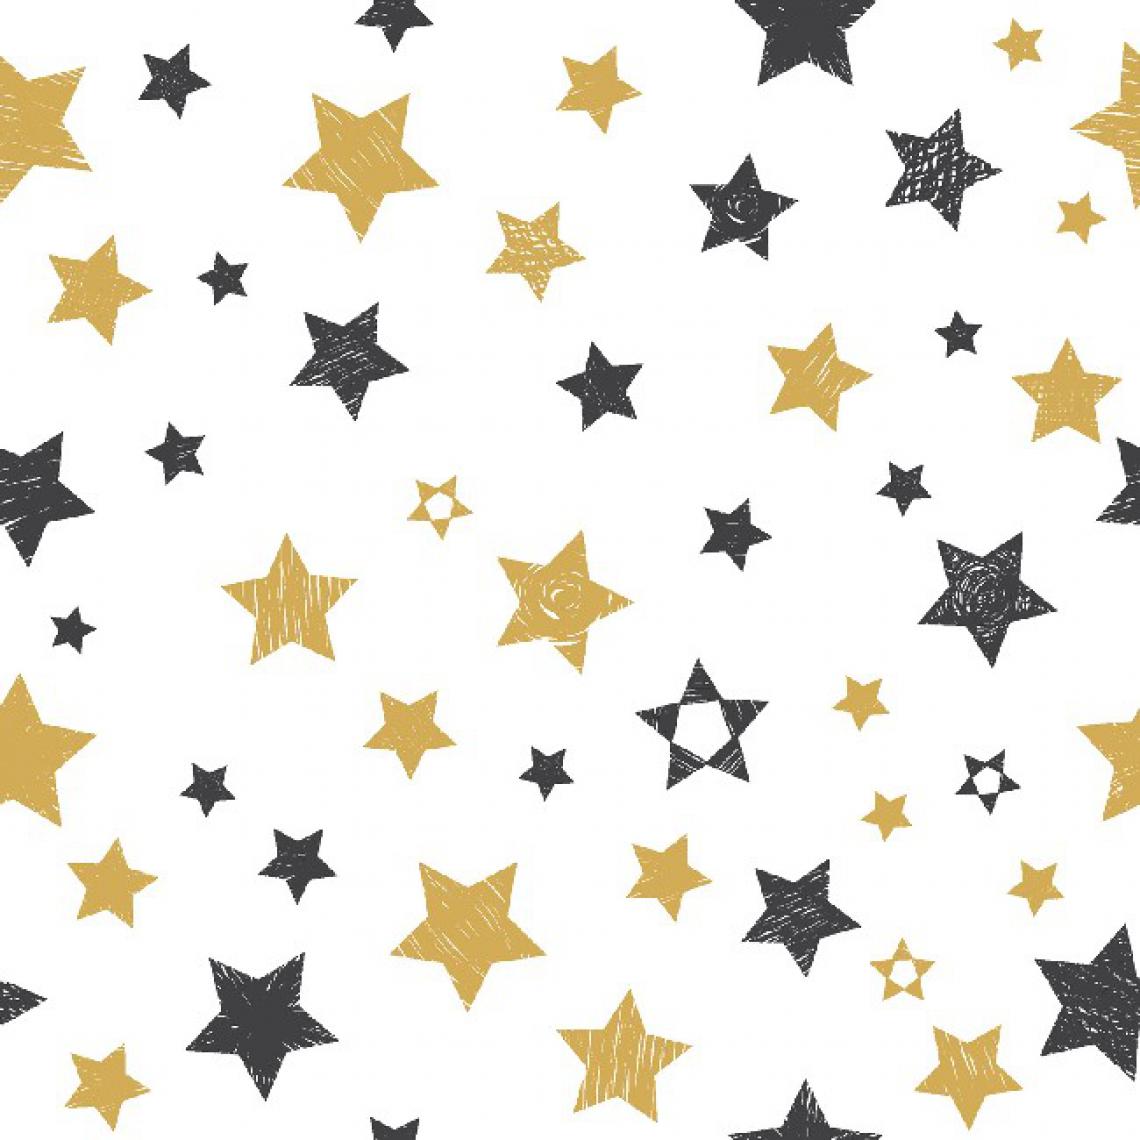 Homemania - HOMEMANIA Tapis Imprimé Stars - Géométrique - Décoration de Maison - Antidérapant - Pour Salon, séjour, chambre à coucher - Multicolore en Polyester, Coton, 80 x 120 cm - Tapis